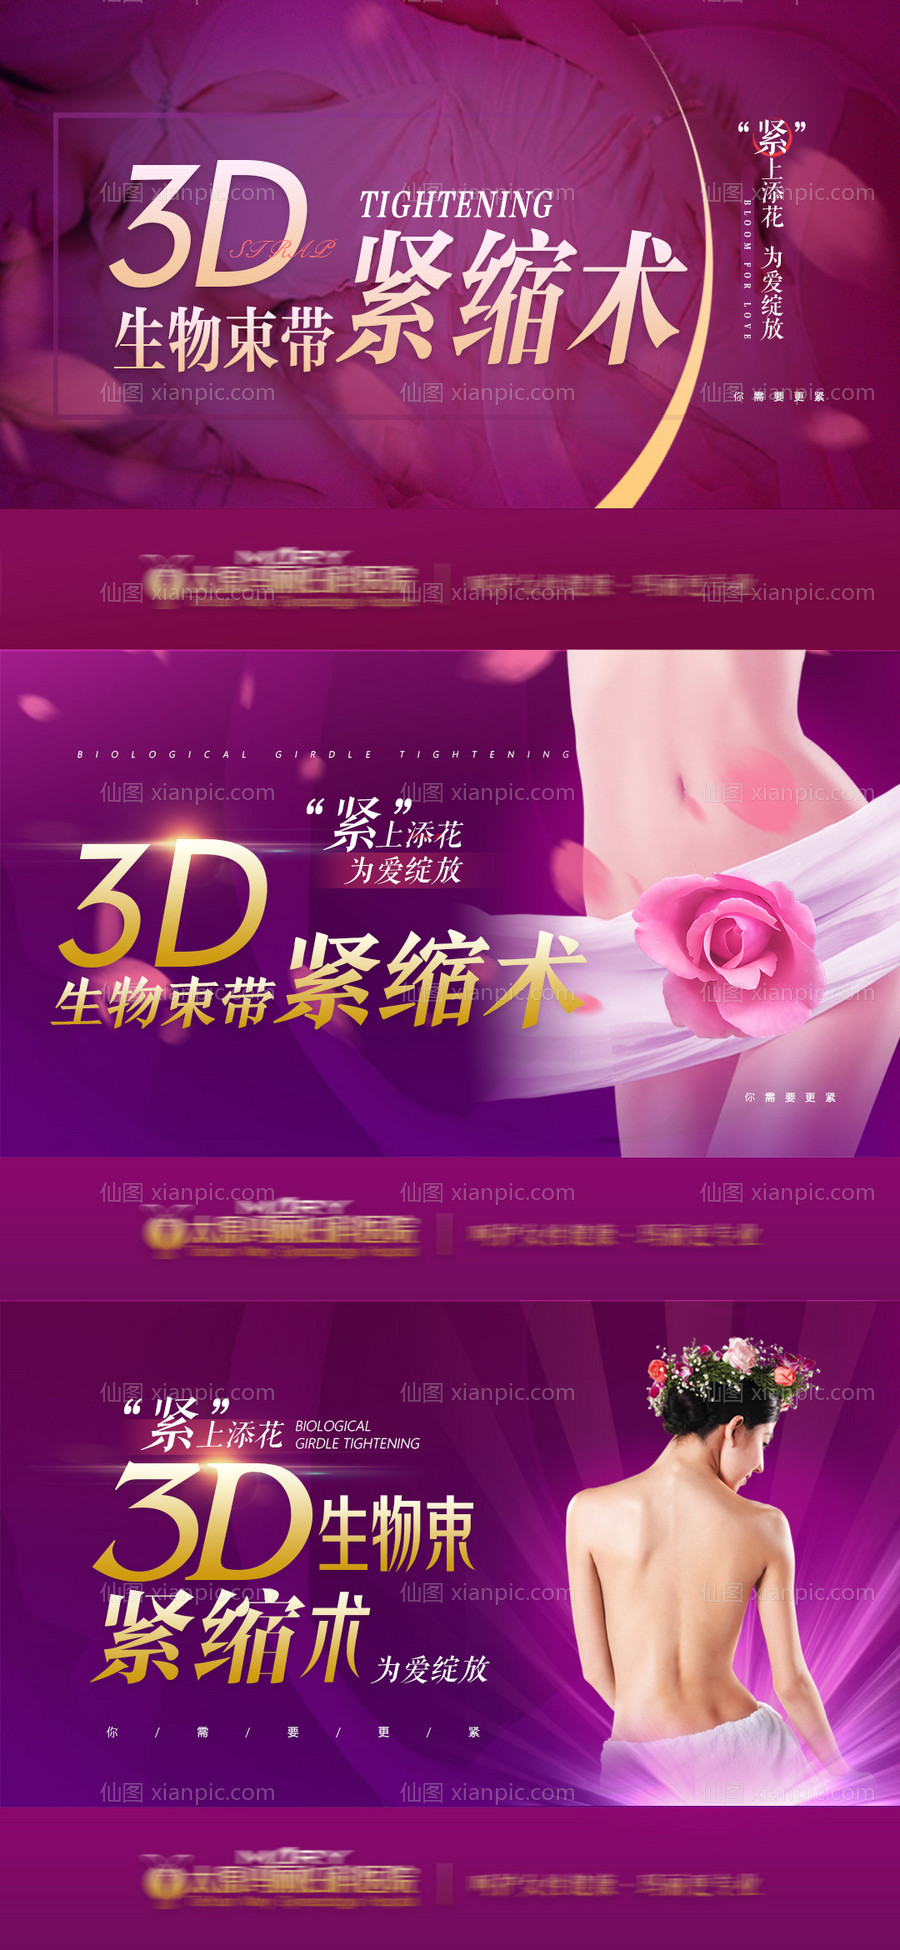 素材乐-3D紧缩术女性私密整形海报